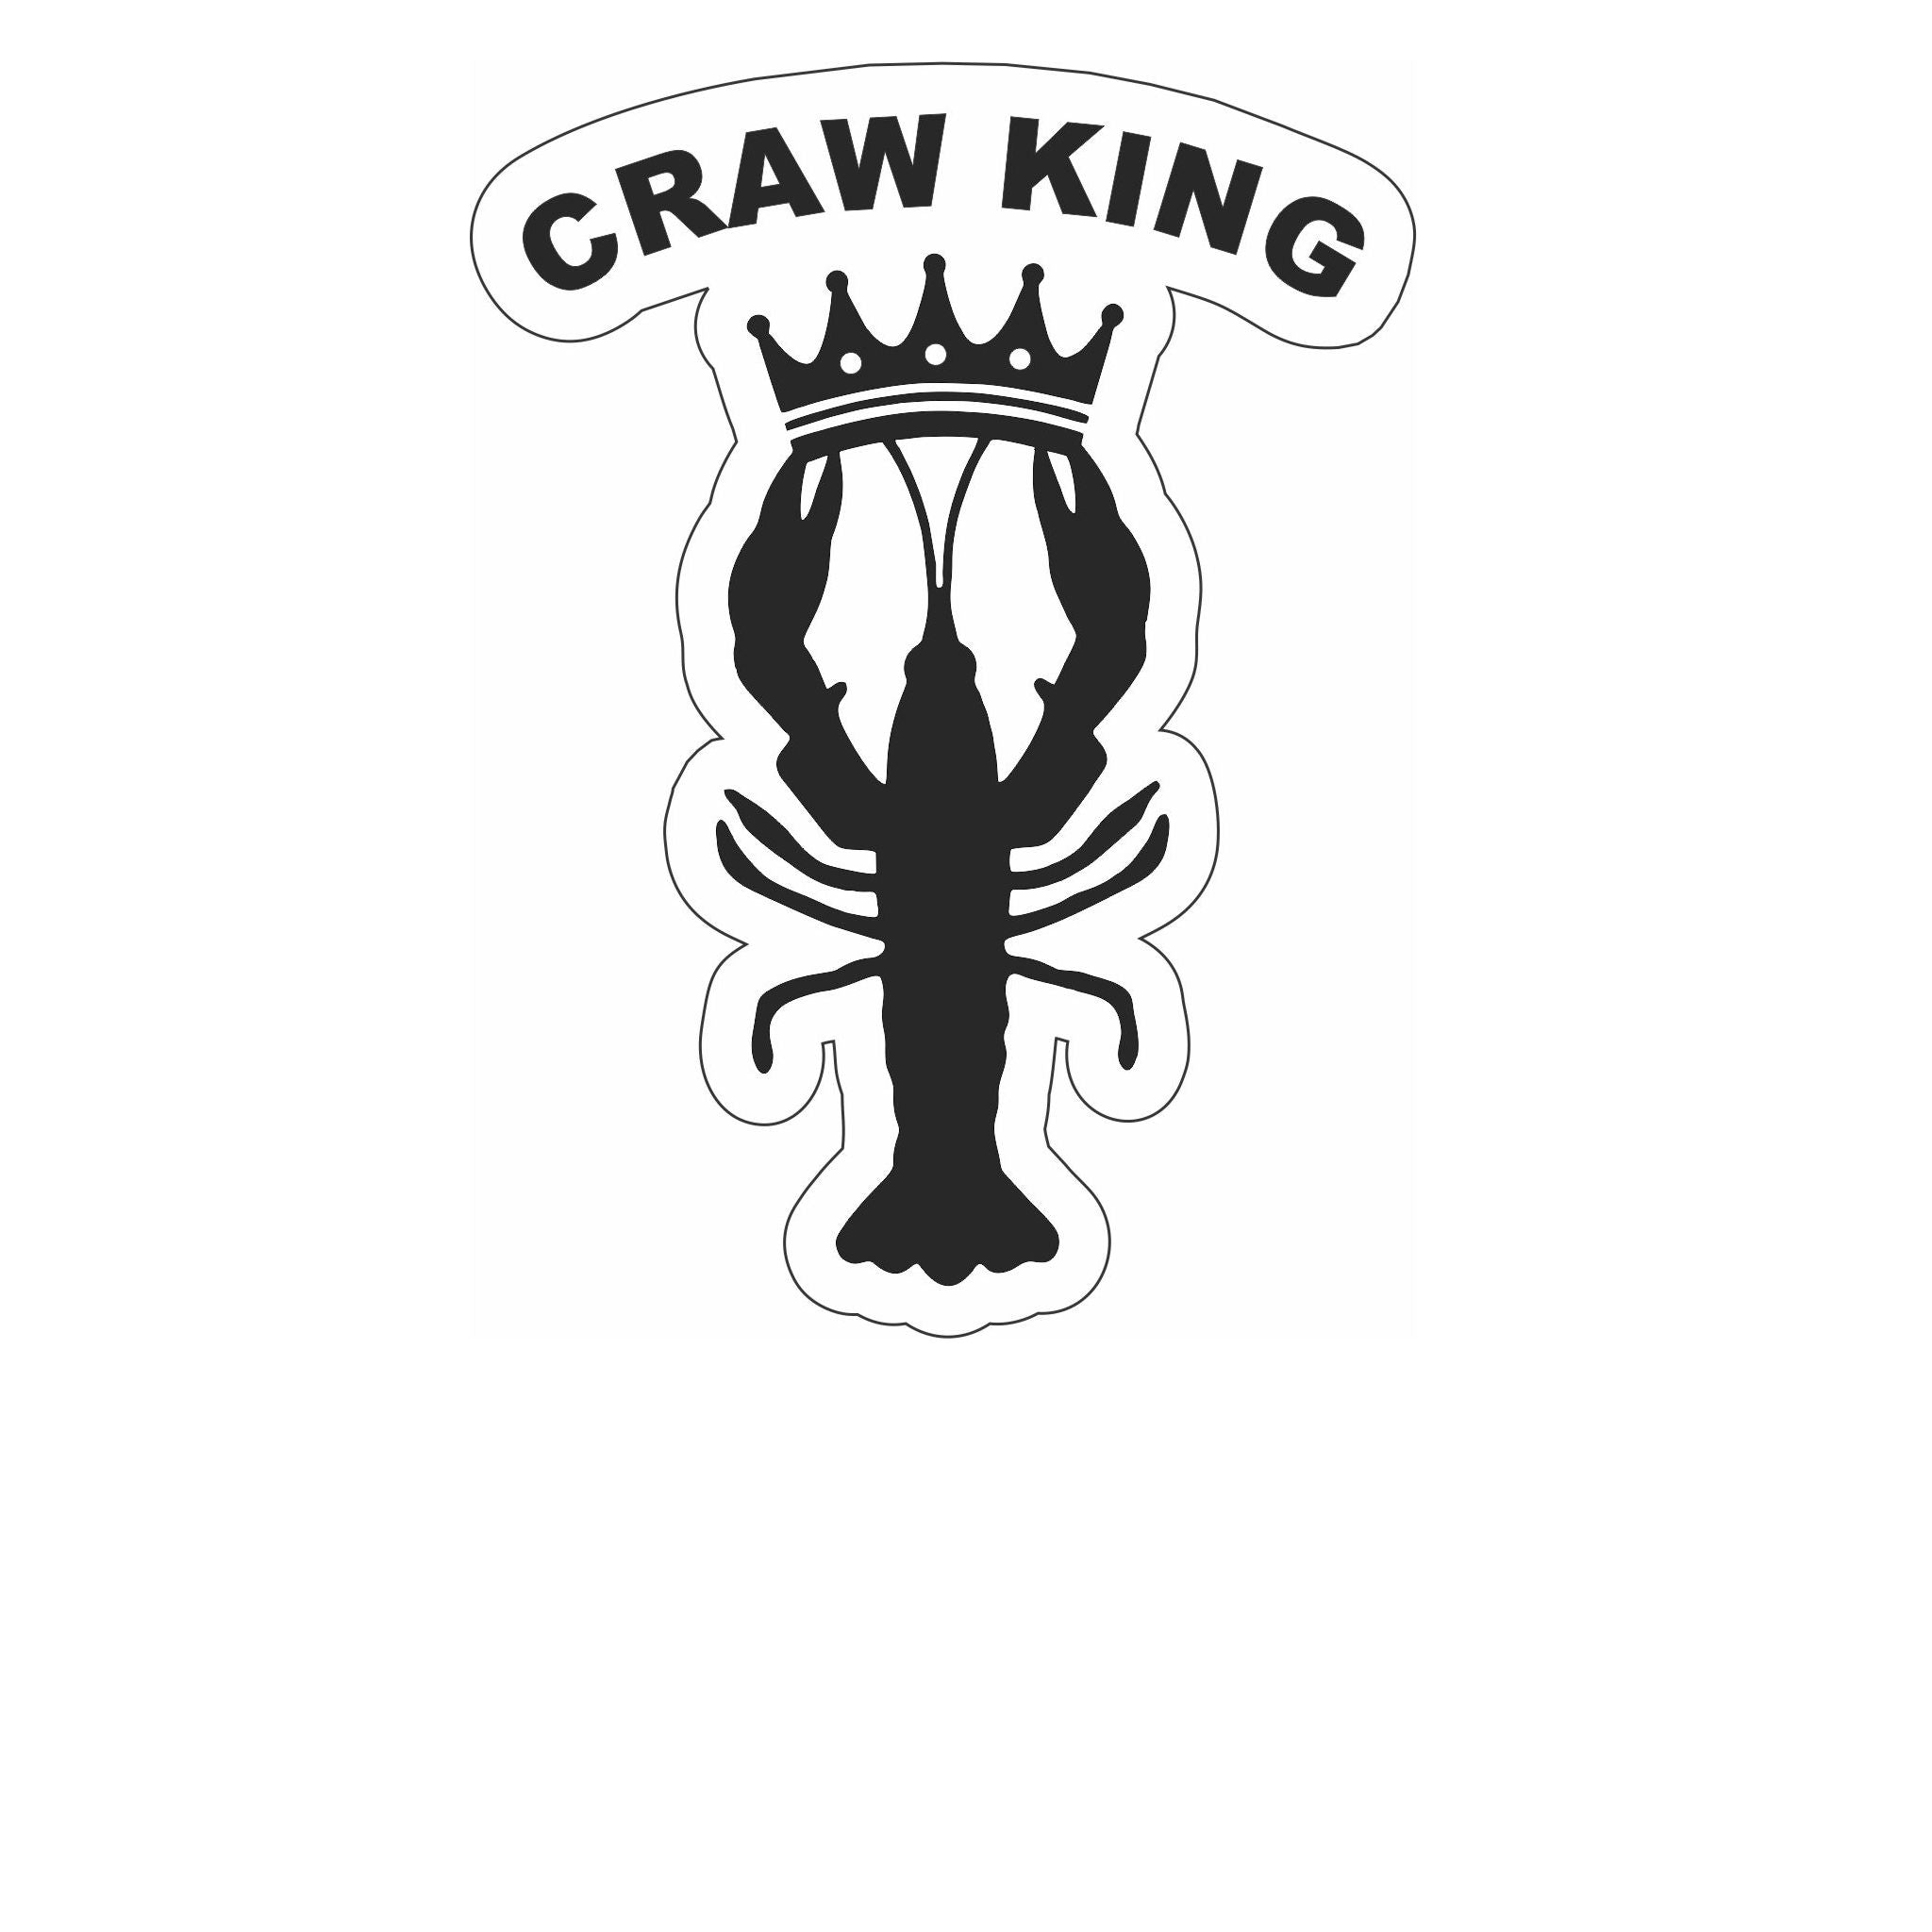 Craw King Printed Decal - Sleek Black Design